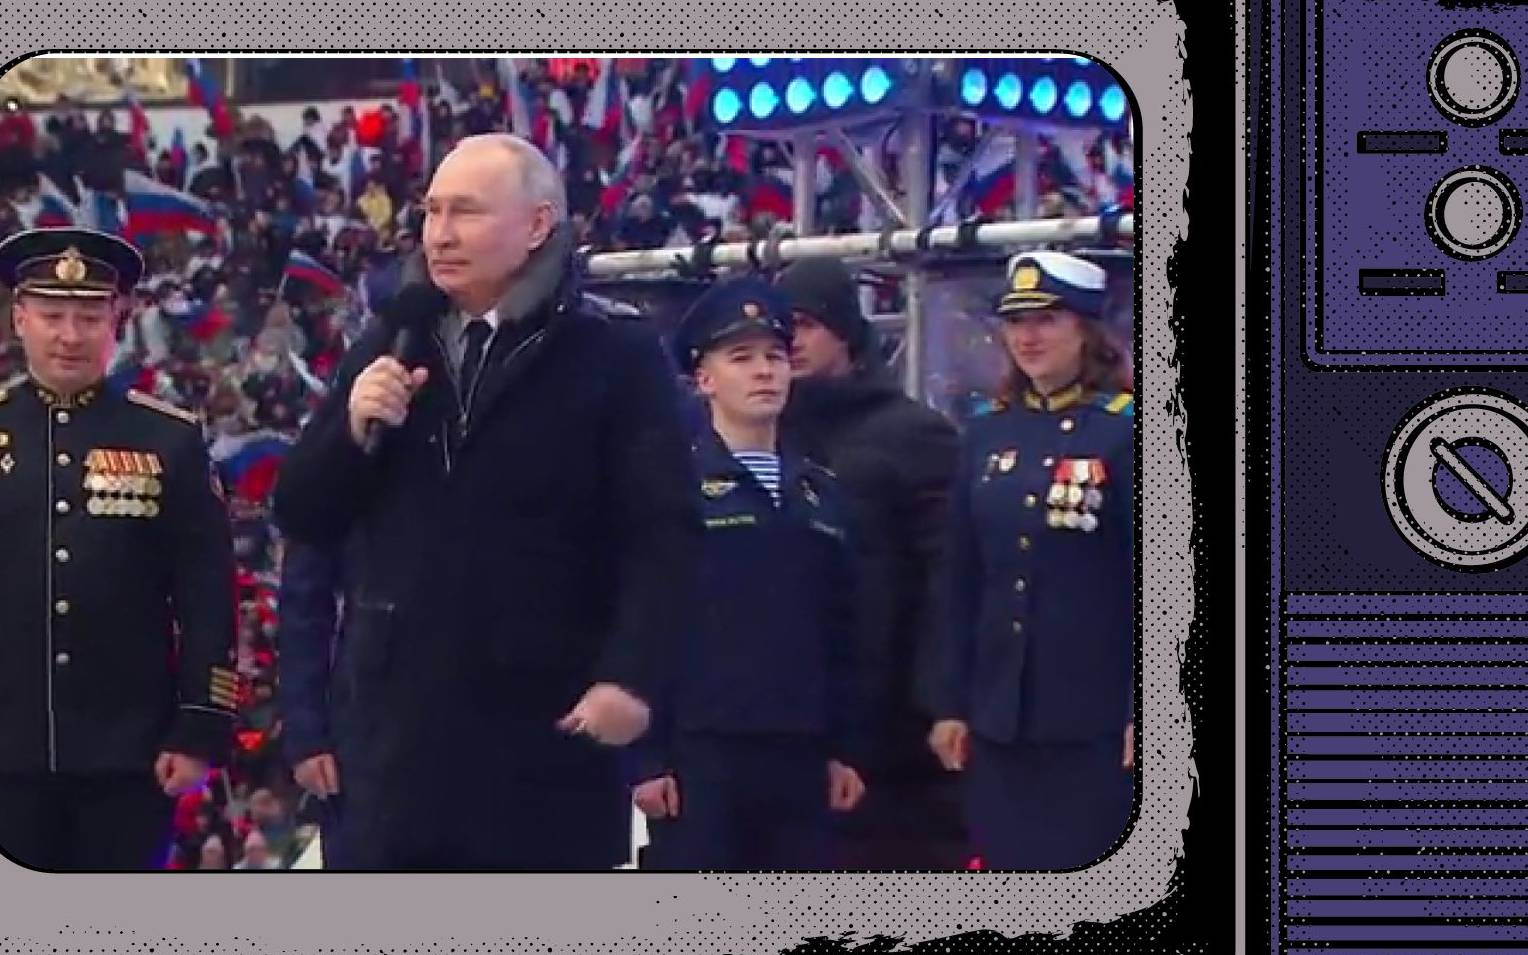 Grafika: zdjęcie Putina w płaszczy, na koncercie, wklejone w ramy starego telewizora